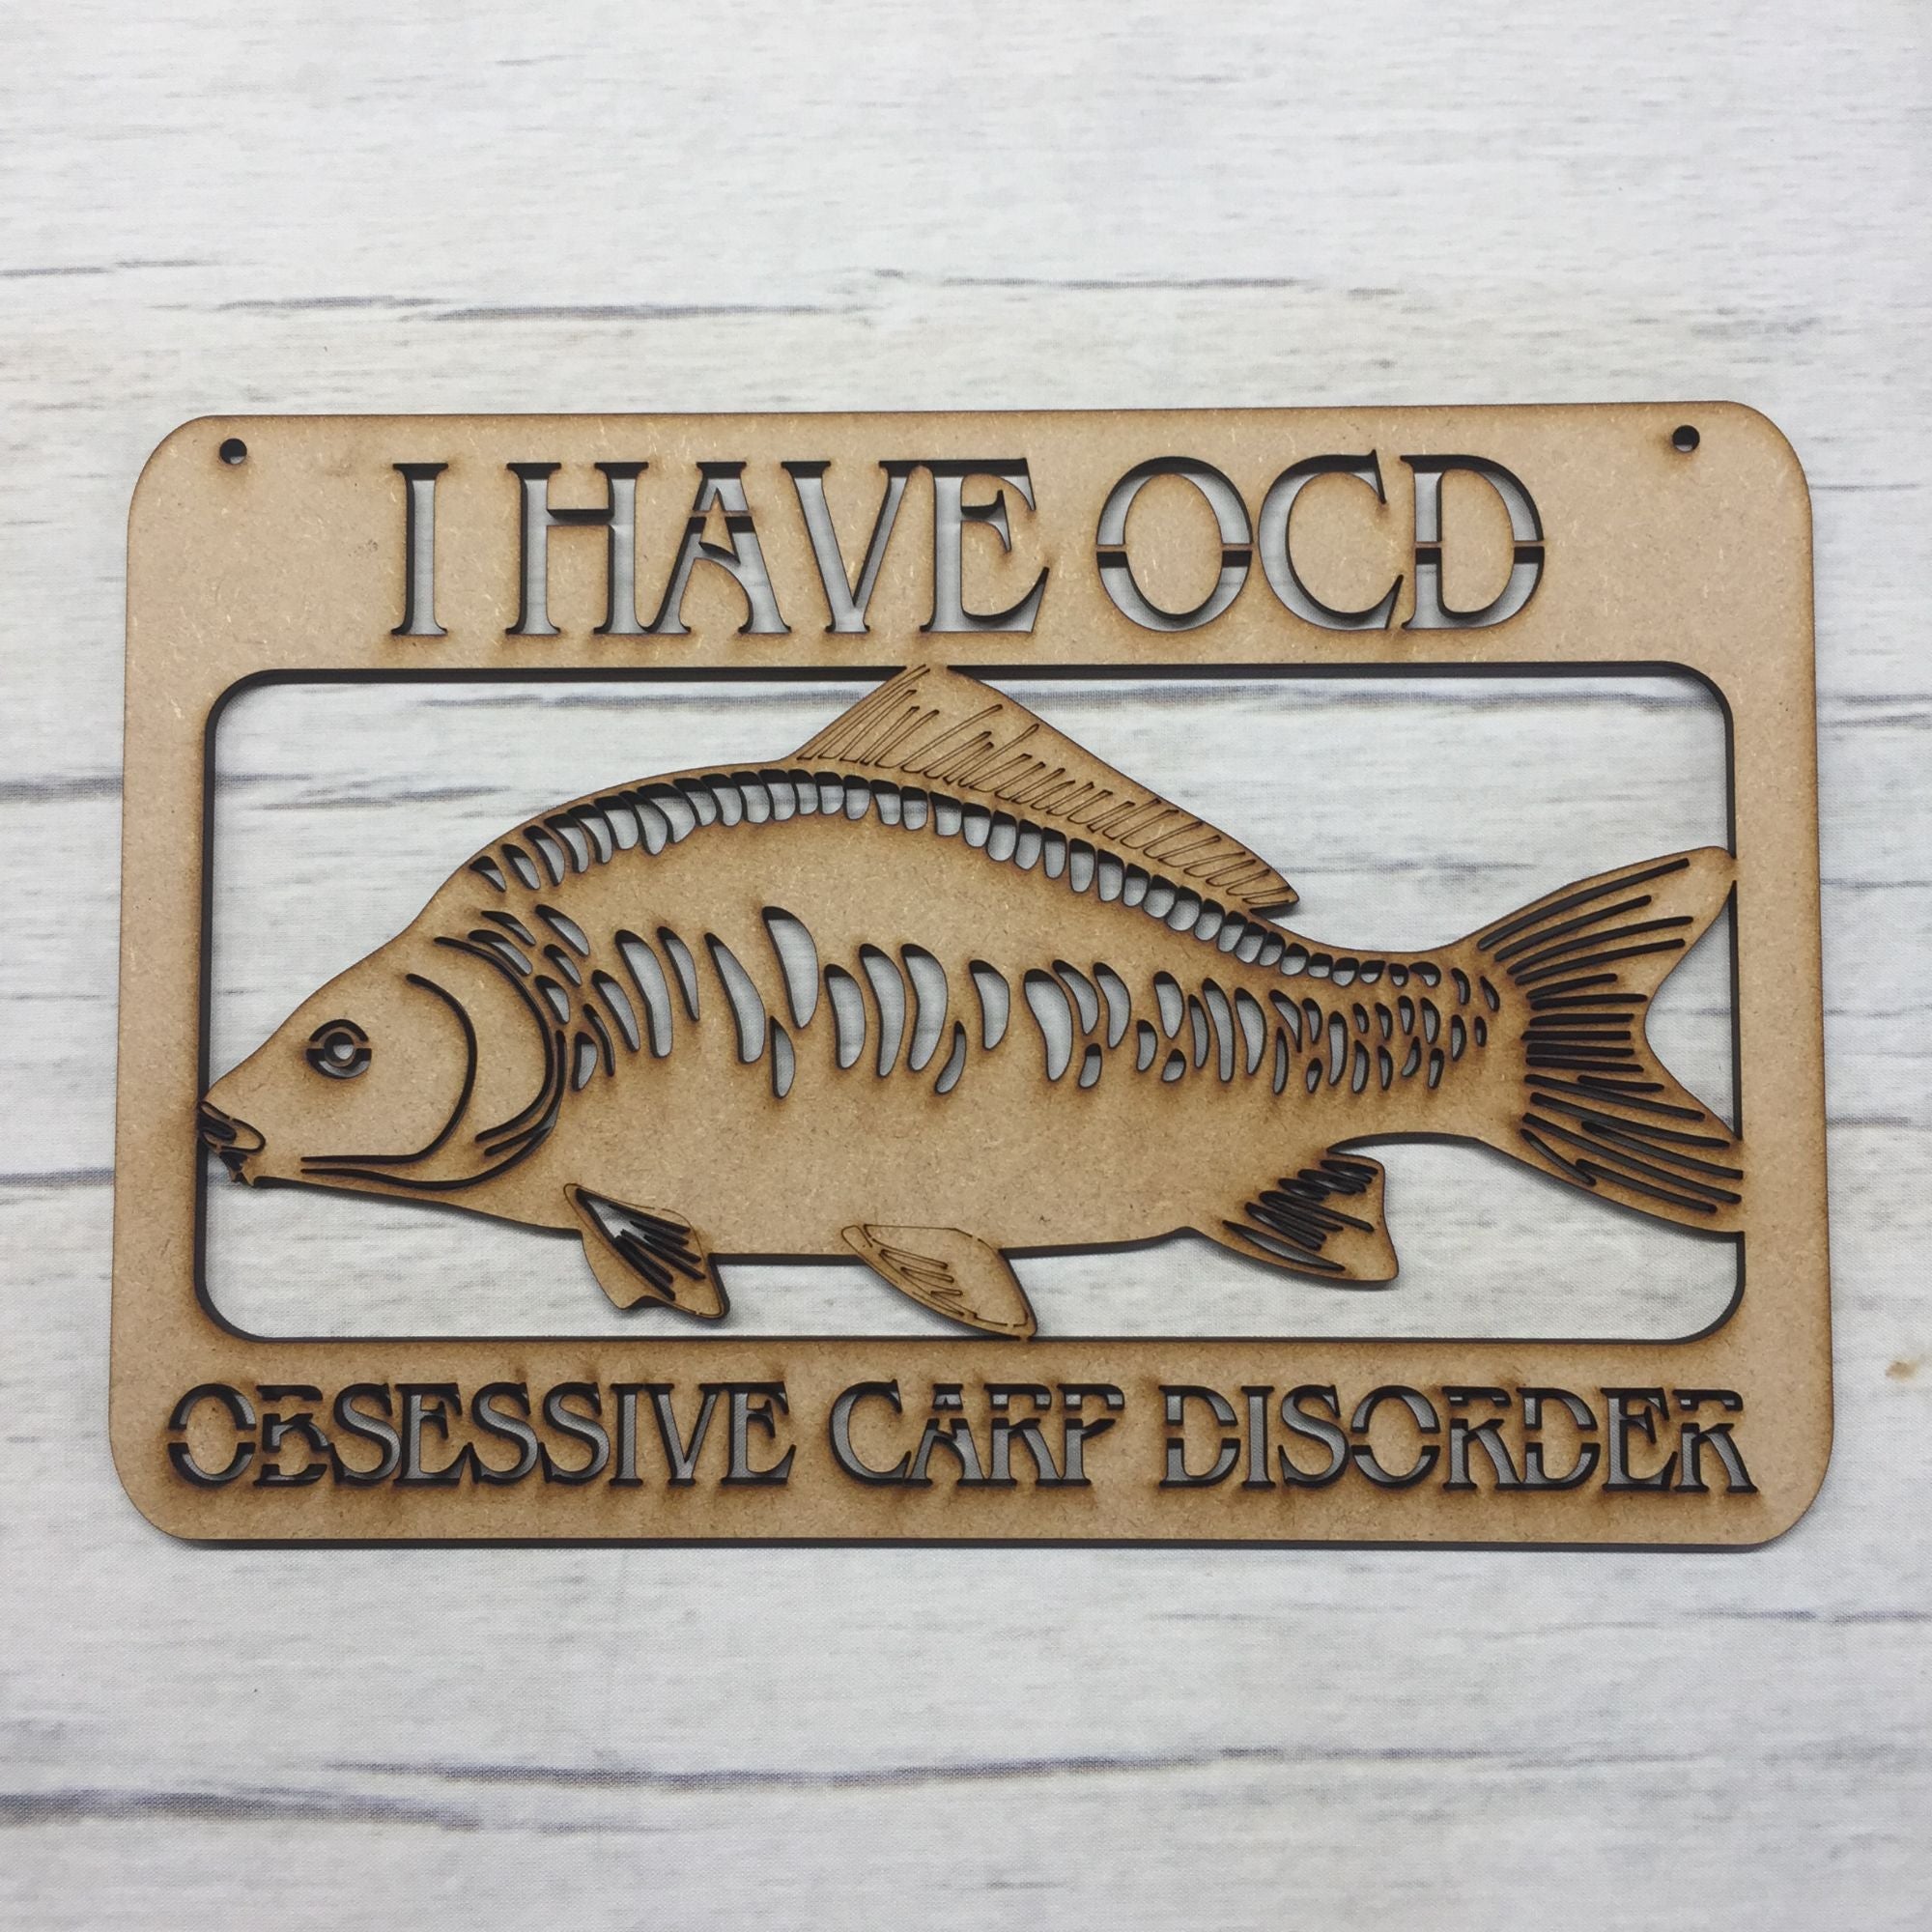 OCD - 'Obsessive Carp Disorder' door plaque